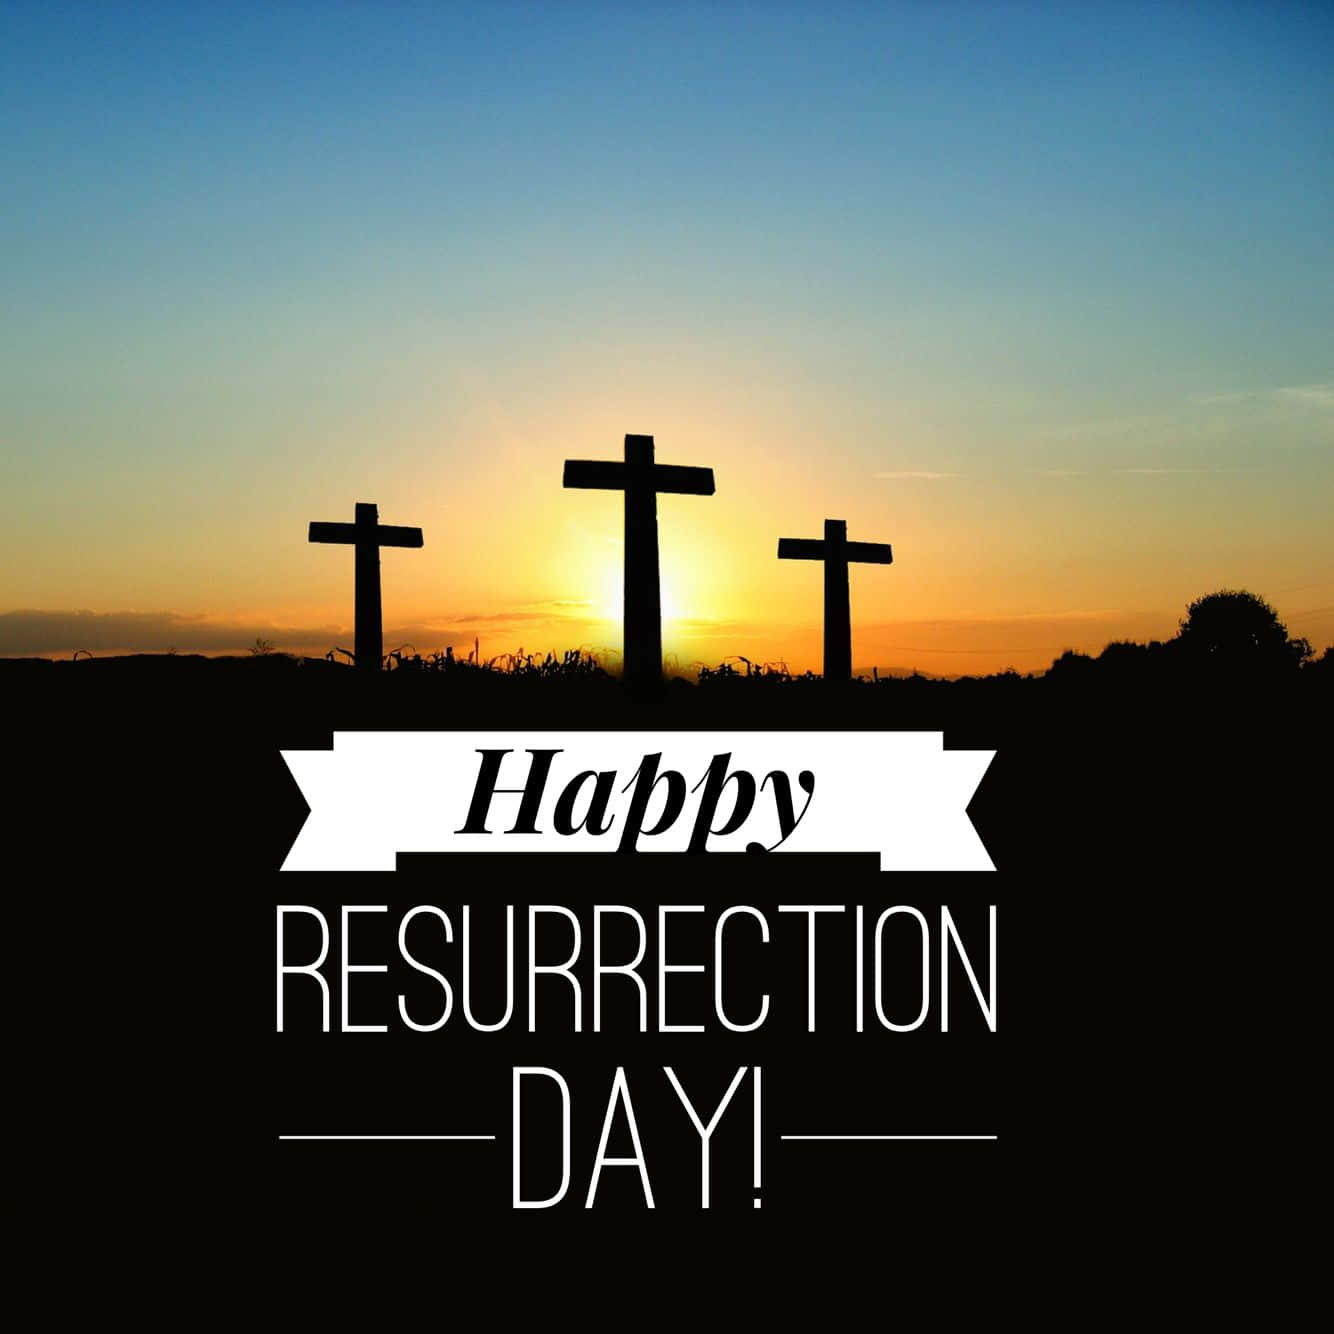 Lacreencia En La Resurrección Es Uno De Los Principales Enseñanzas Del Cristianismo.